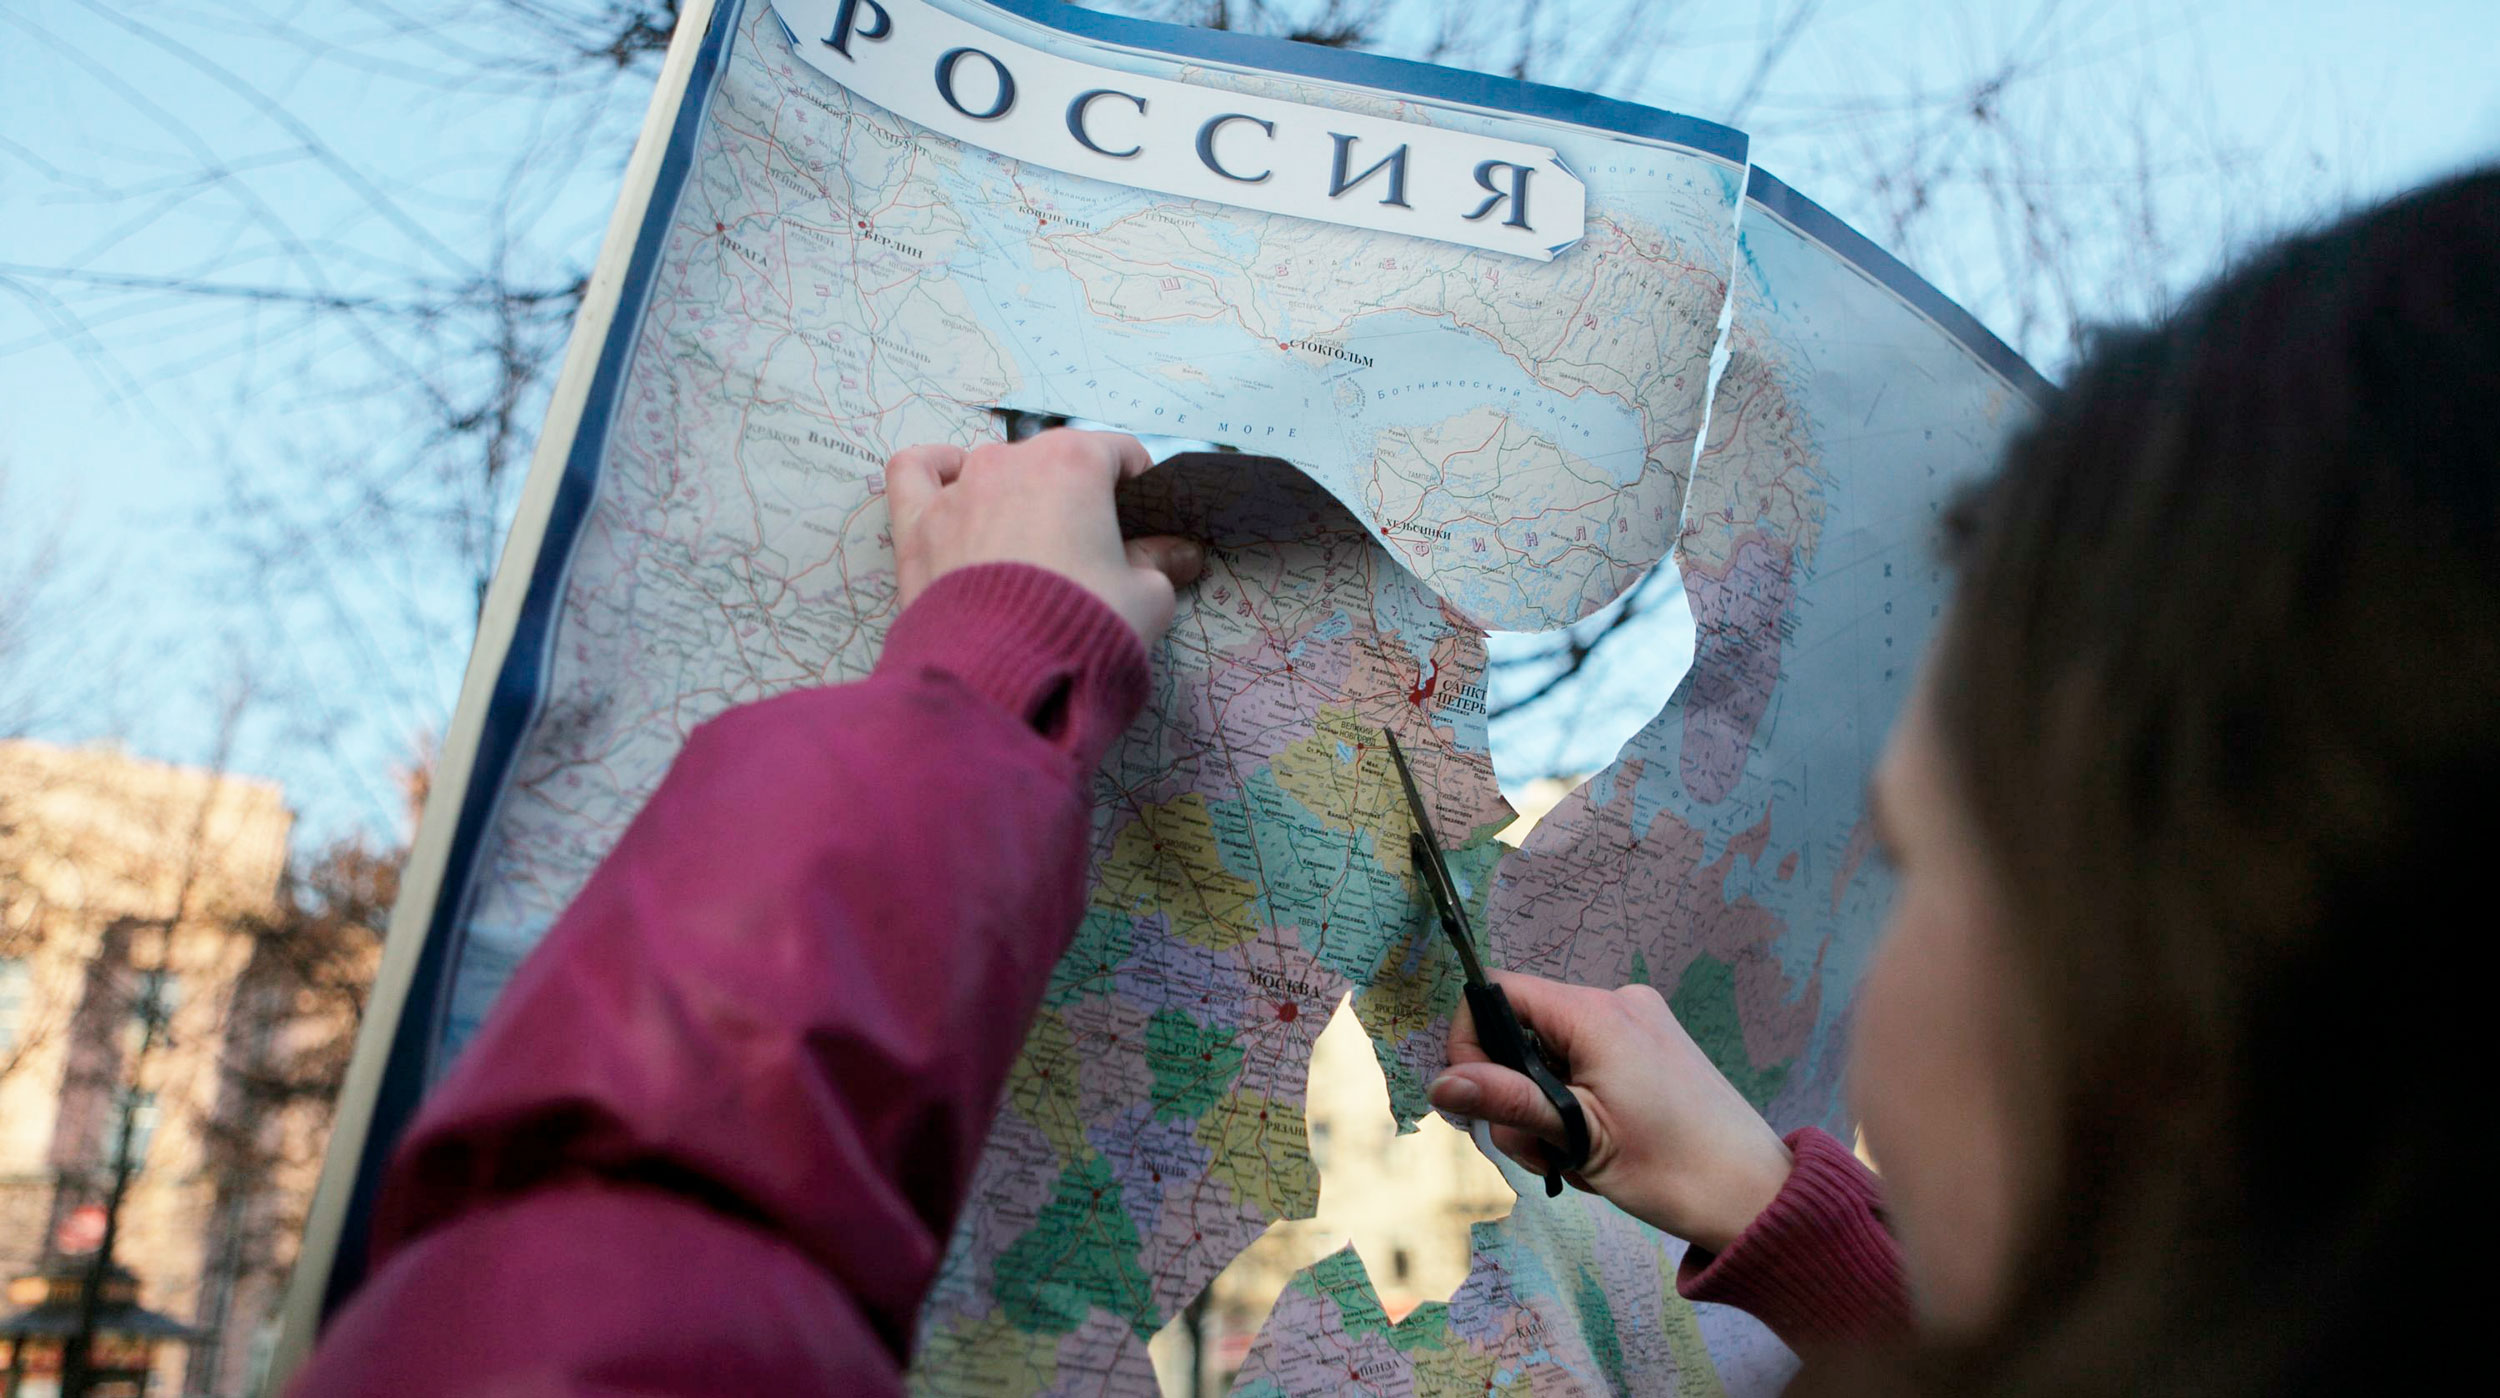 Чем вызваны обширные провалы земли в российских городах, разбираемся в материале Daily Storm undefined